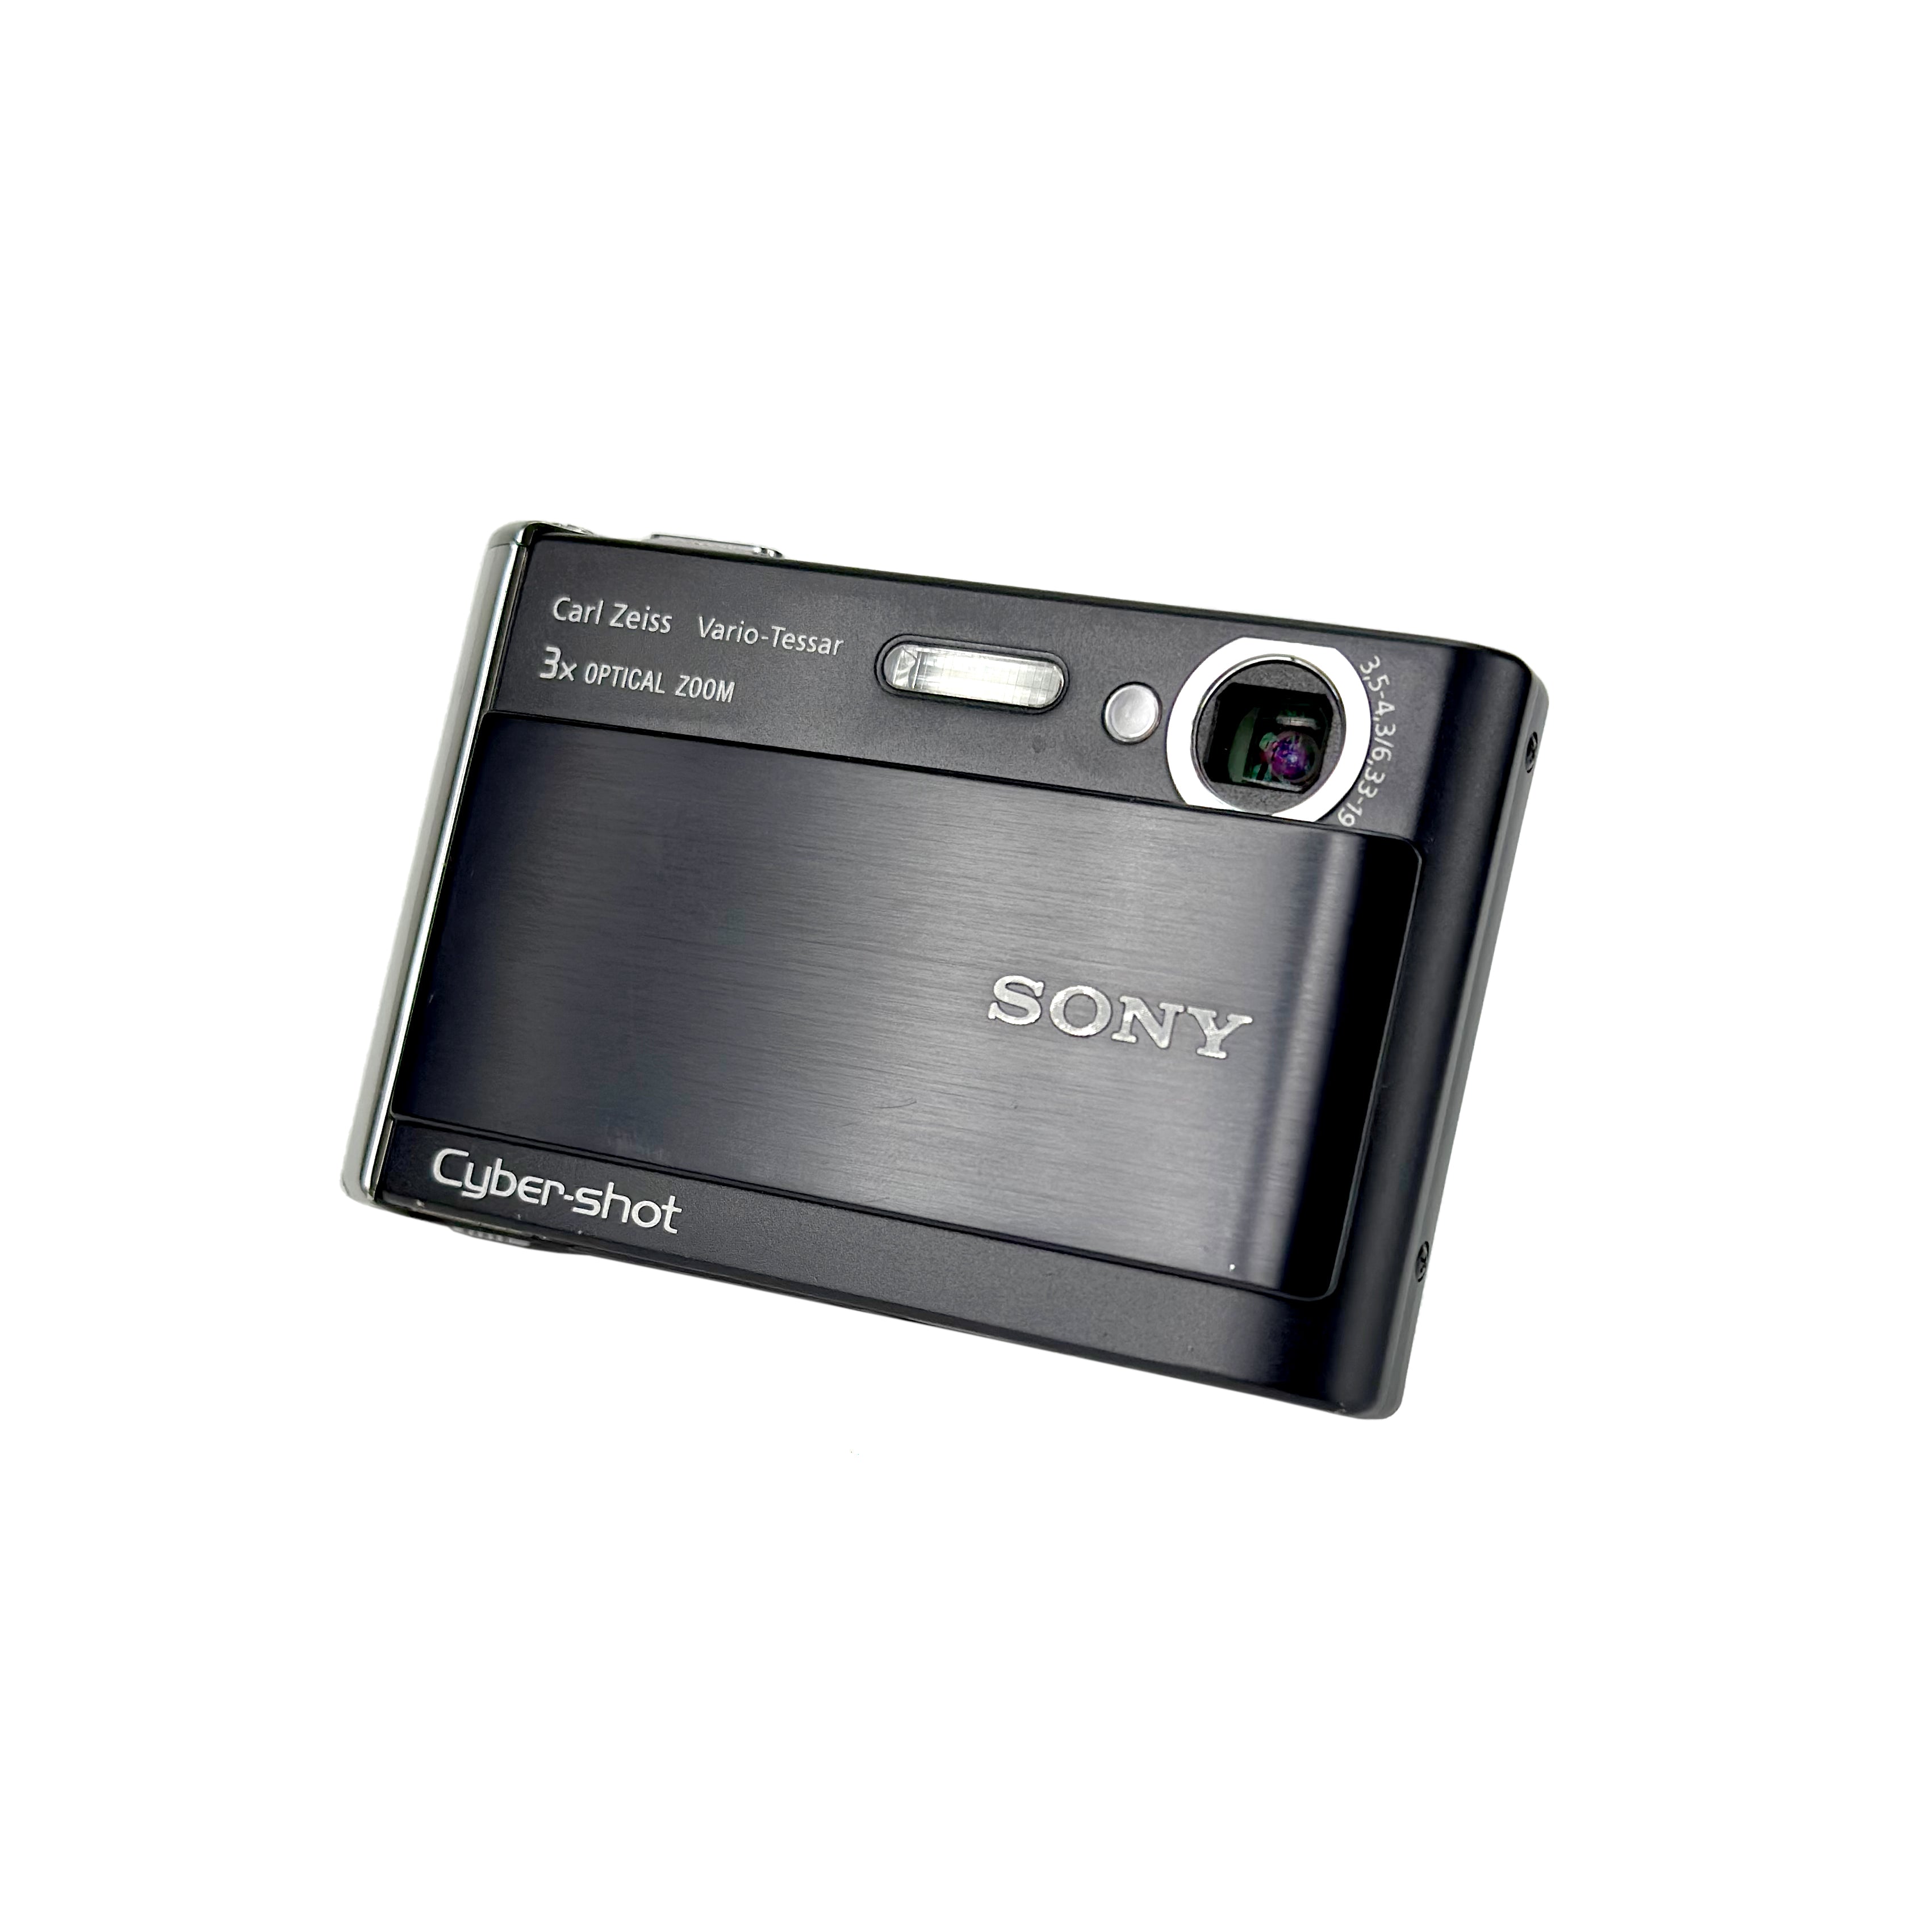 Sony Cyber-Shot DSC-T70 Digital Compact